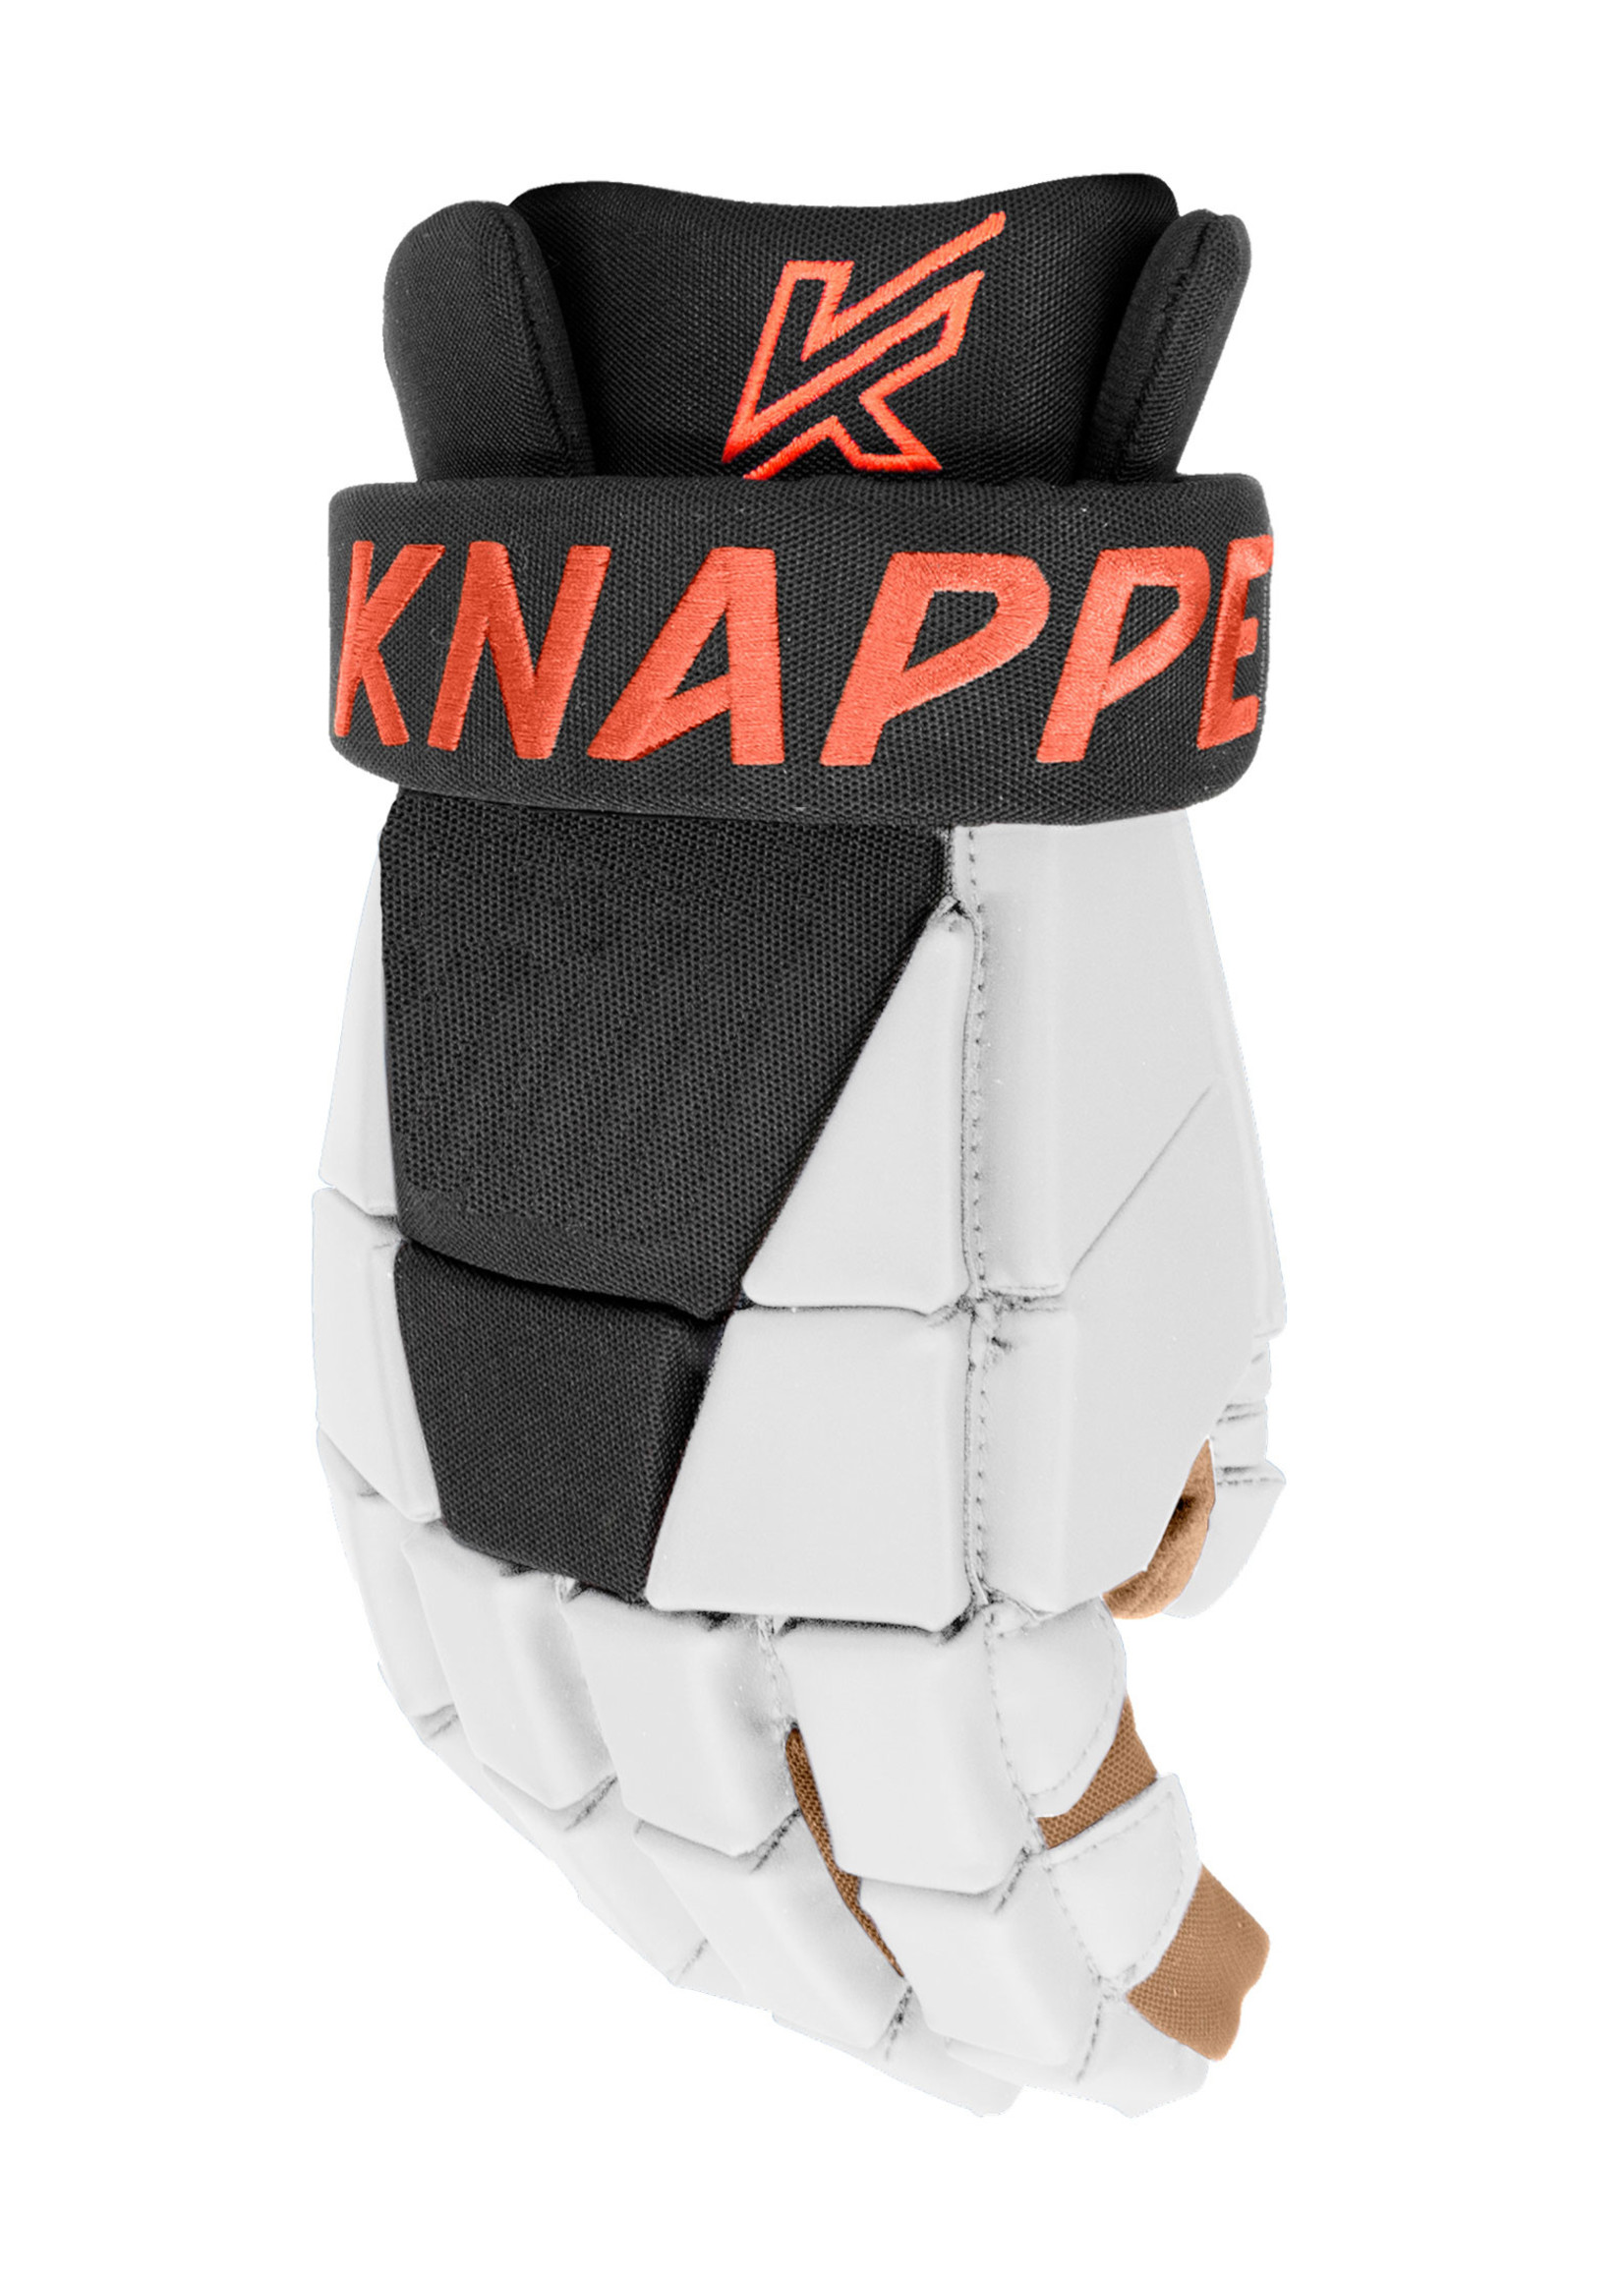 Knapper KNAPPER GANTS DEK AK3